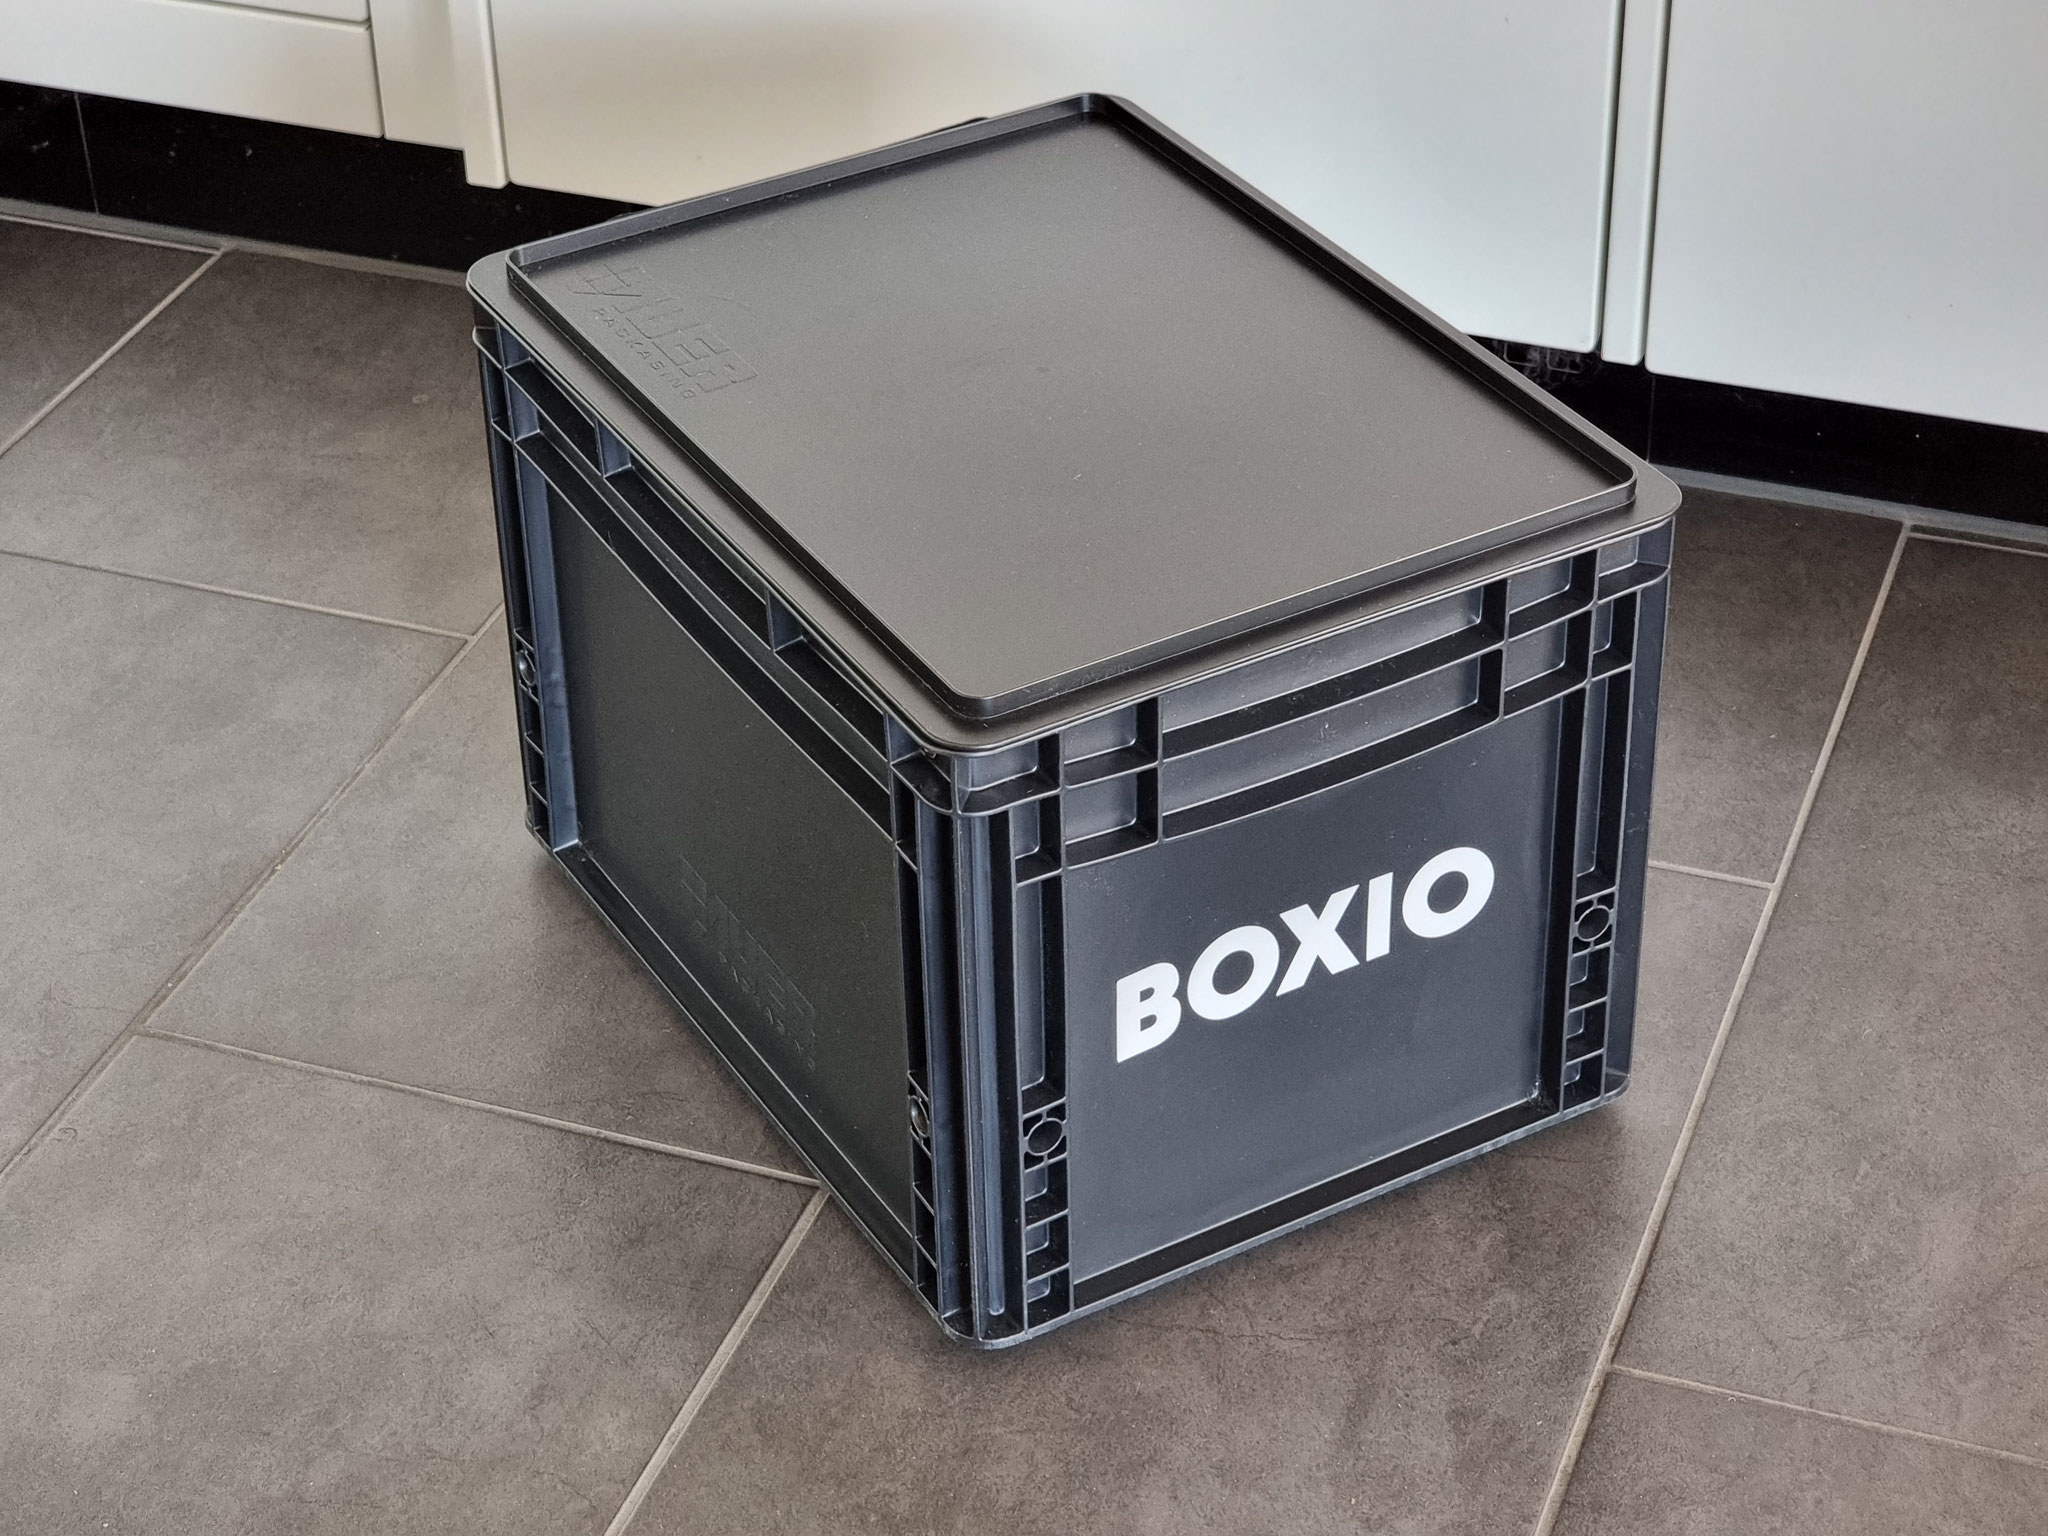 BOXIO die beste Trenntoilette, die günstigste Trockentoilette, Reisetoilette, camping WC praktisch in einer Rako Euro Box leicht und einfach verstaut